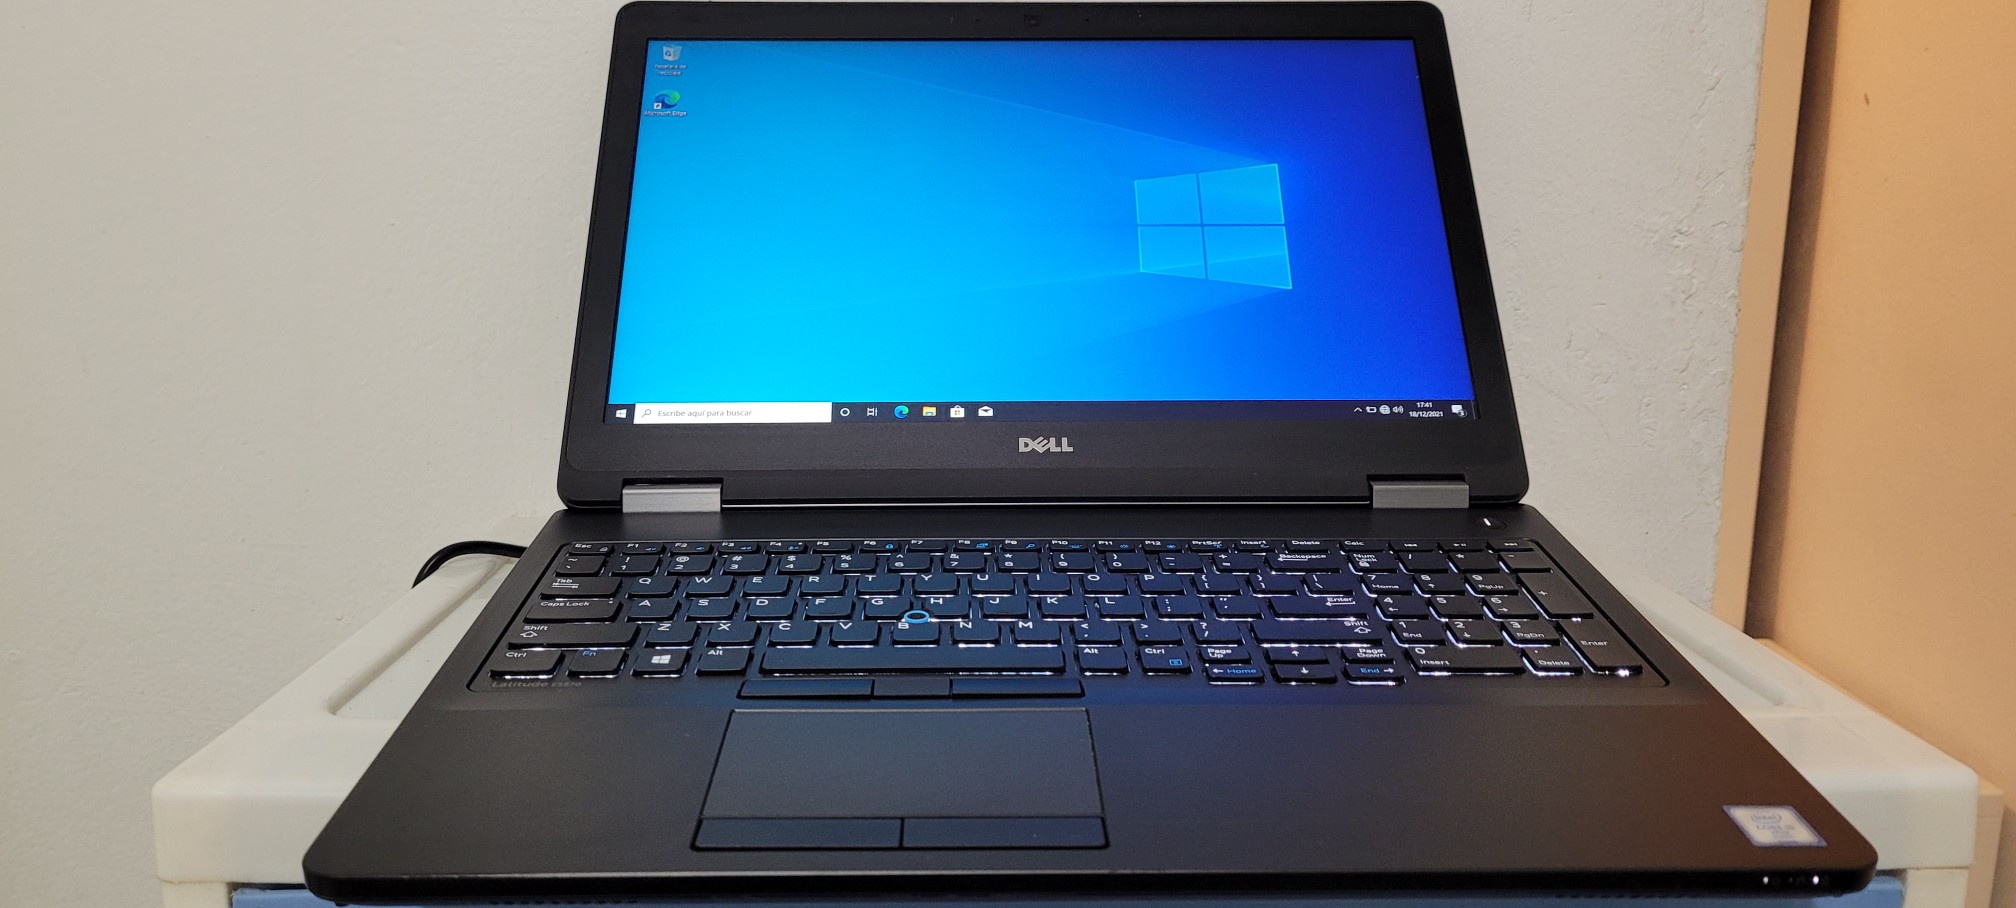 computadoras y laptops - Laptop Dell 17 Pulg Core i7 2.7ghz Ram 8gb Disco 1000gb Teclado lumimico